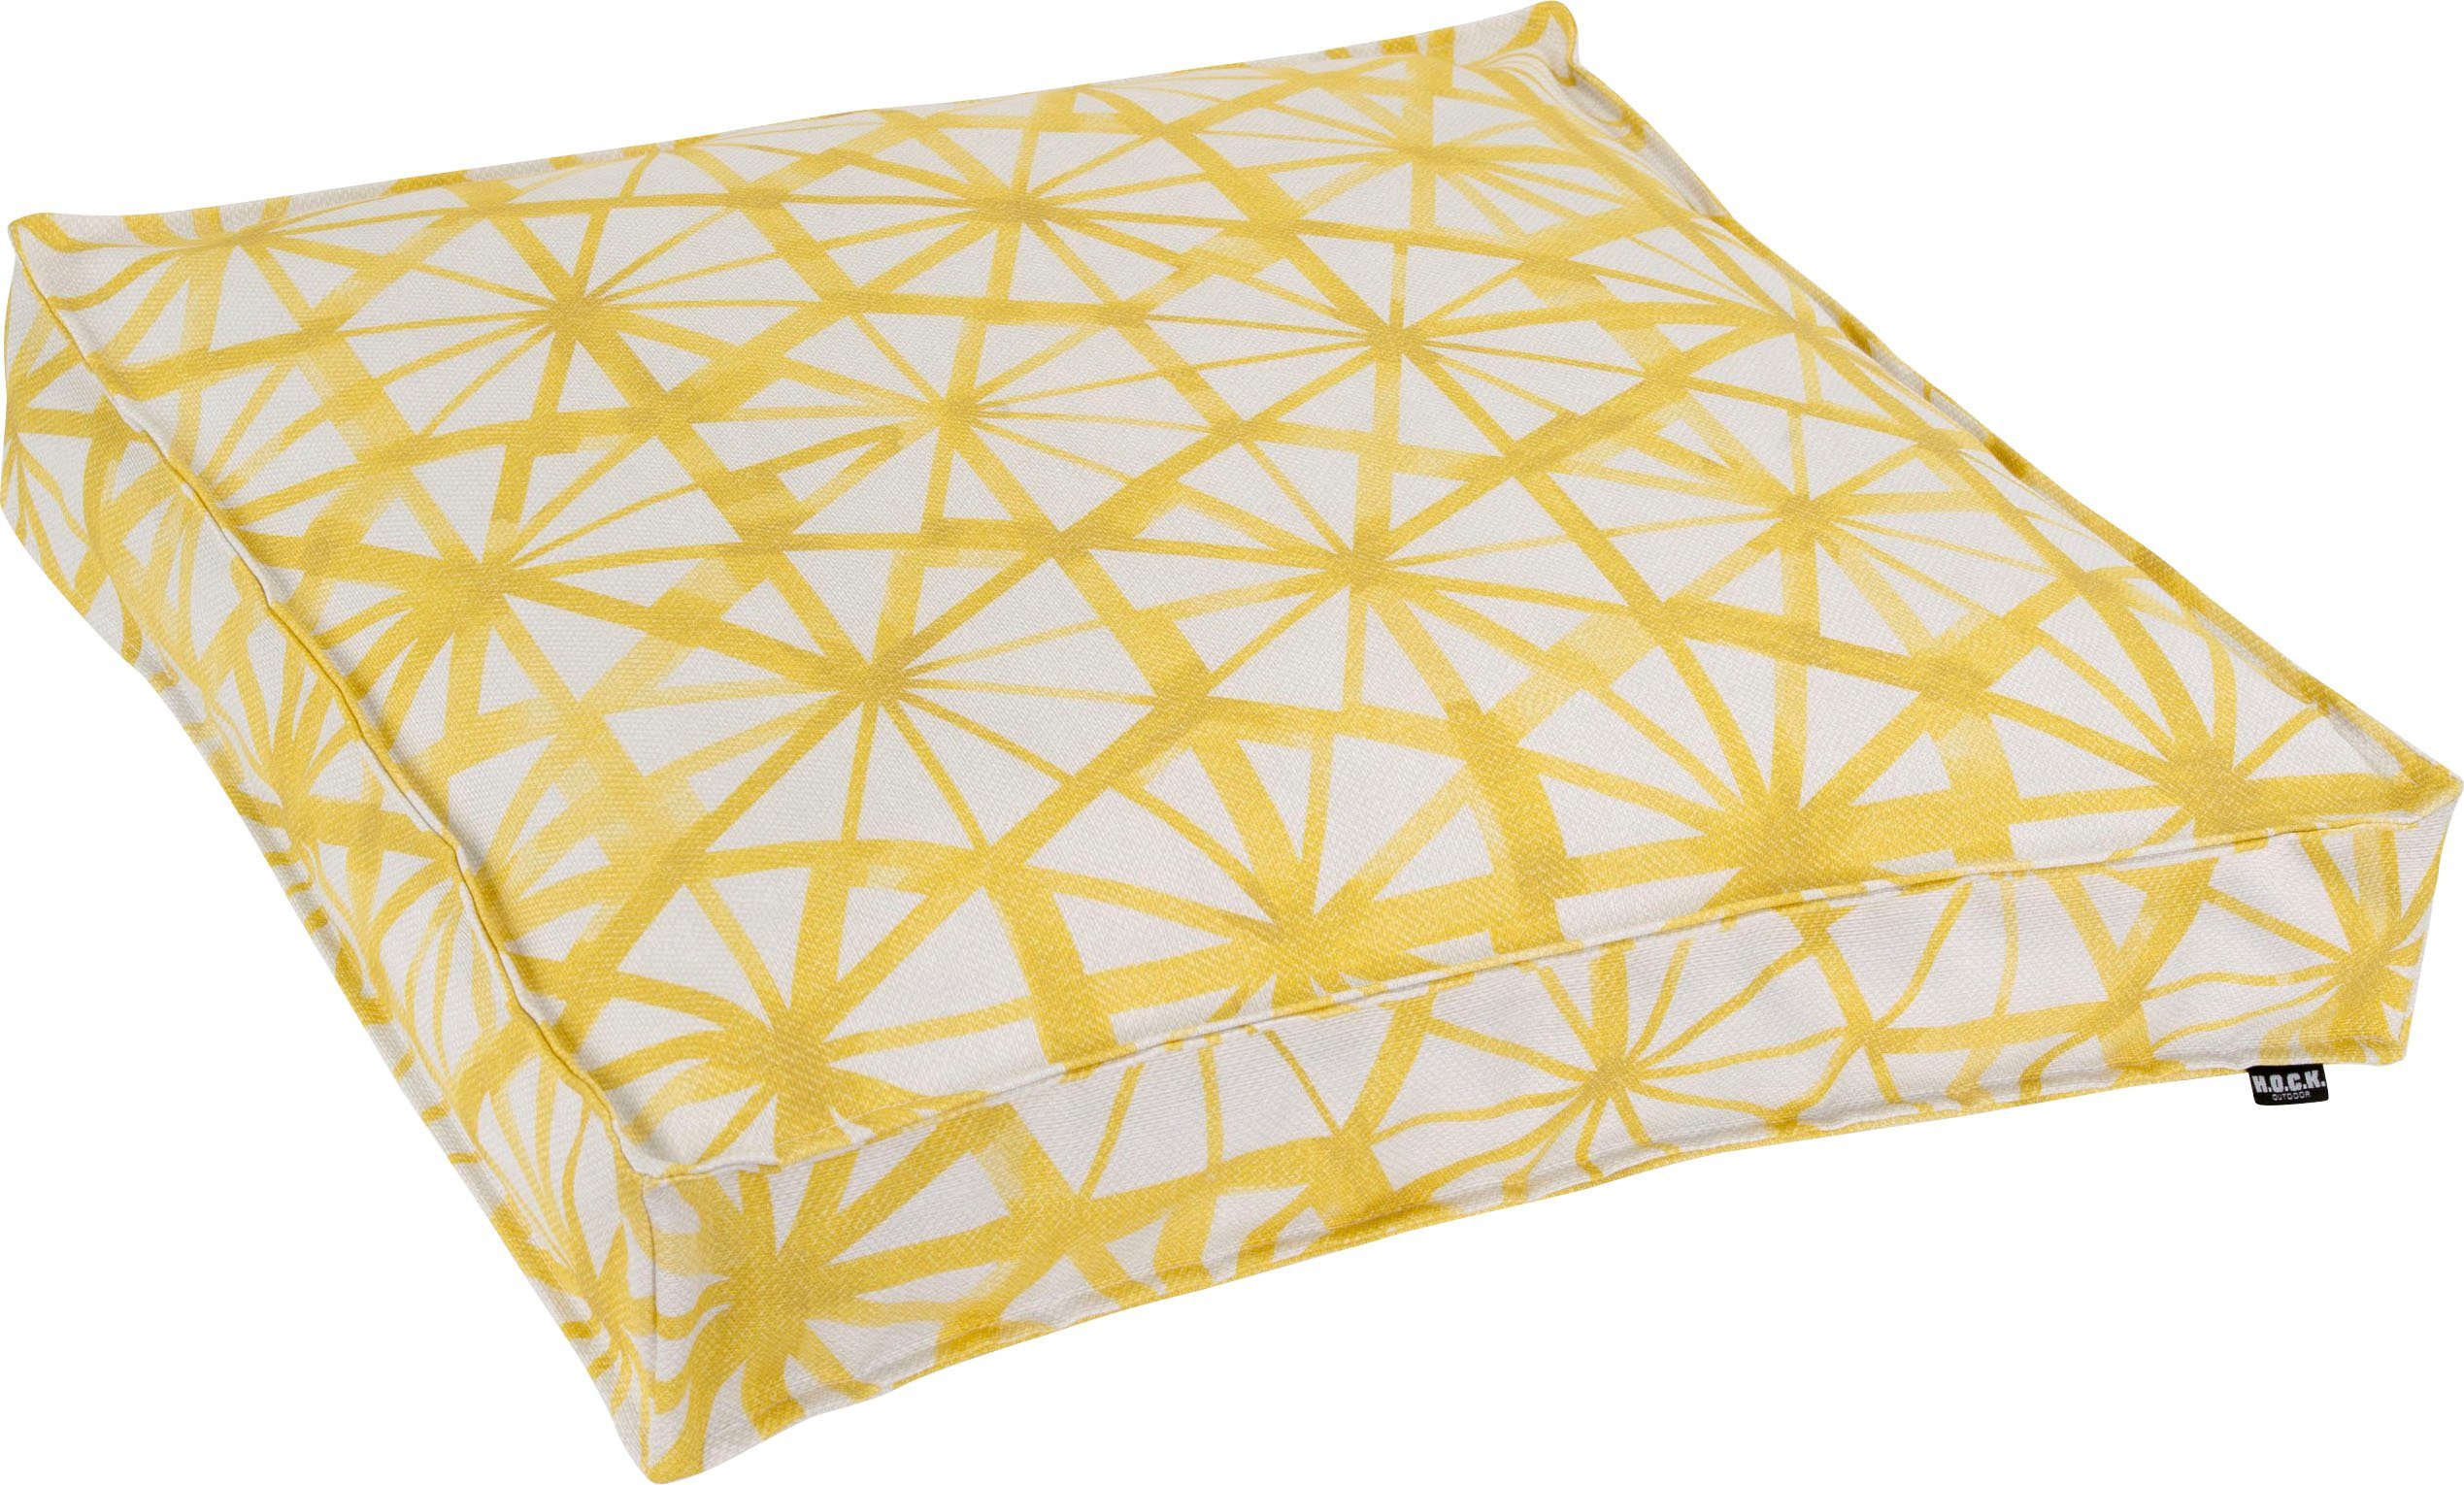 H.O.C.K. Bodenkissen Kami, mit geometrischen Muster gelb